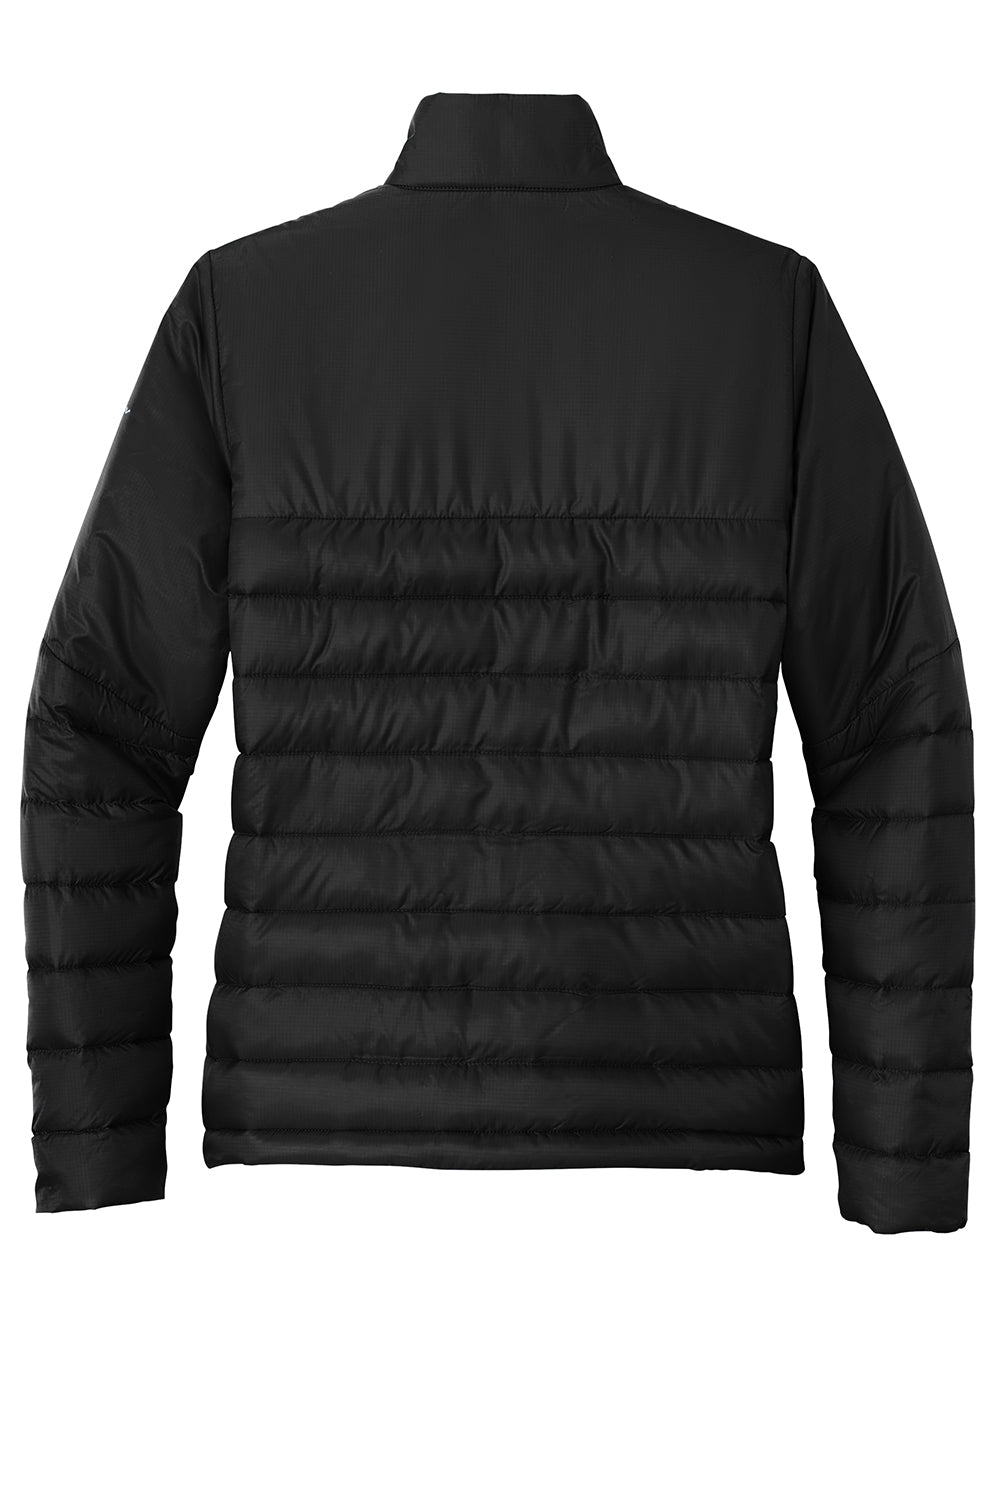 Eddie Bauer EB511 Womens Water Resistant Quilted Full Zip Jacket Deep Black Flat Back